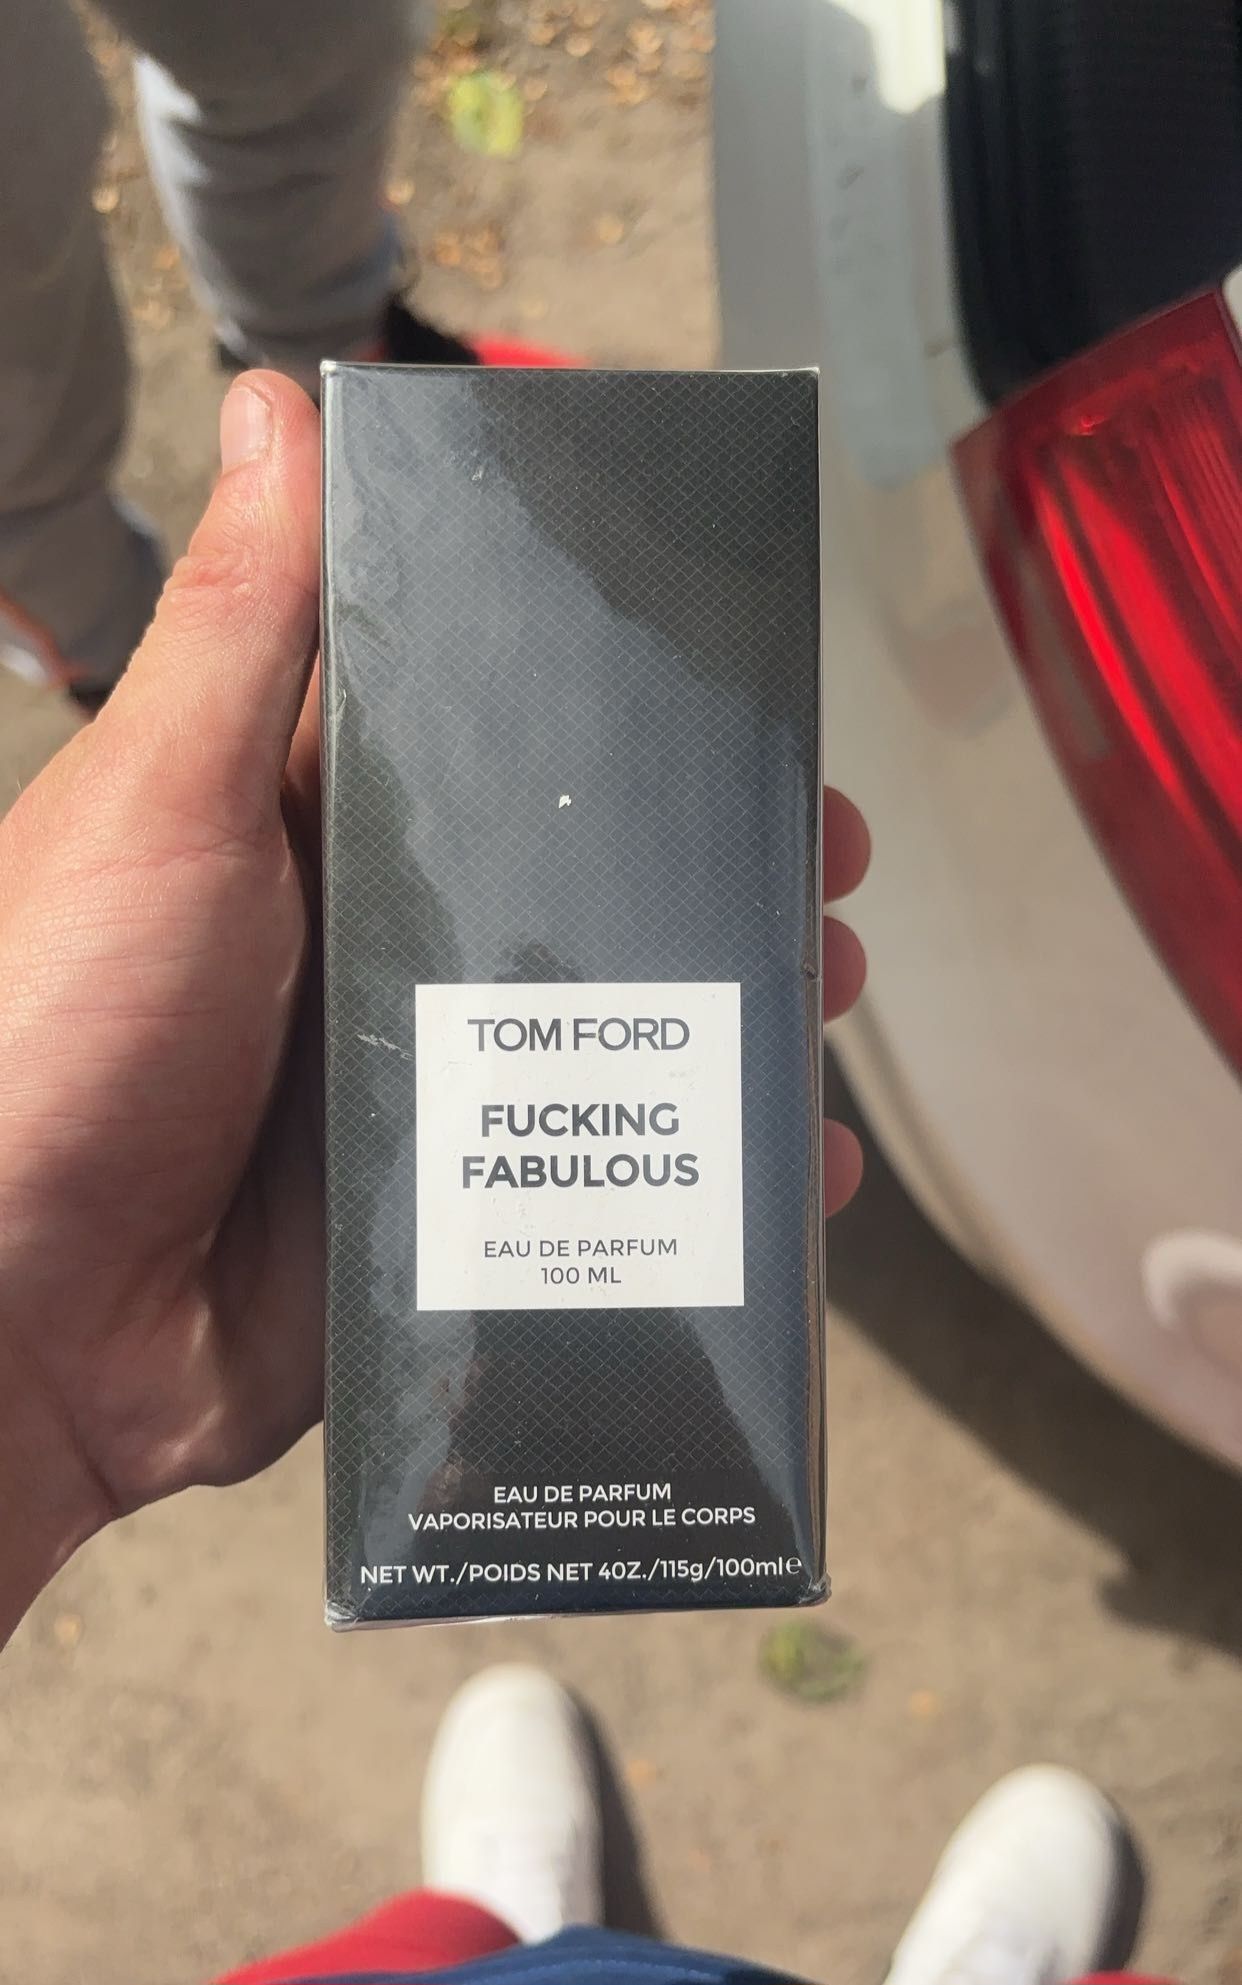 Perfum Tom Ford fucking fabulous